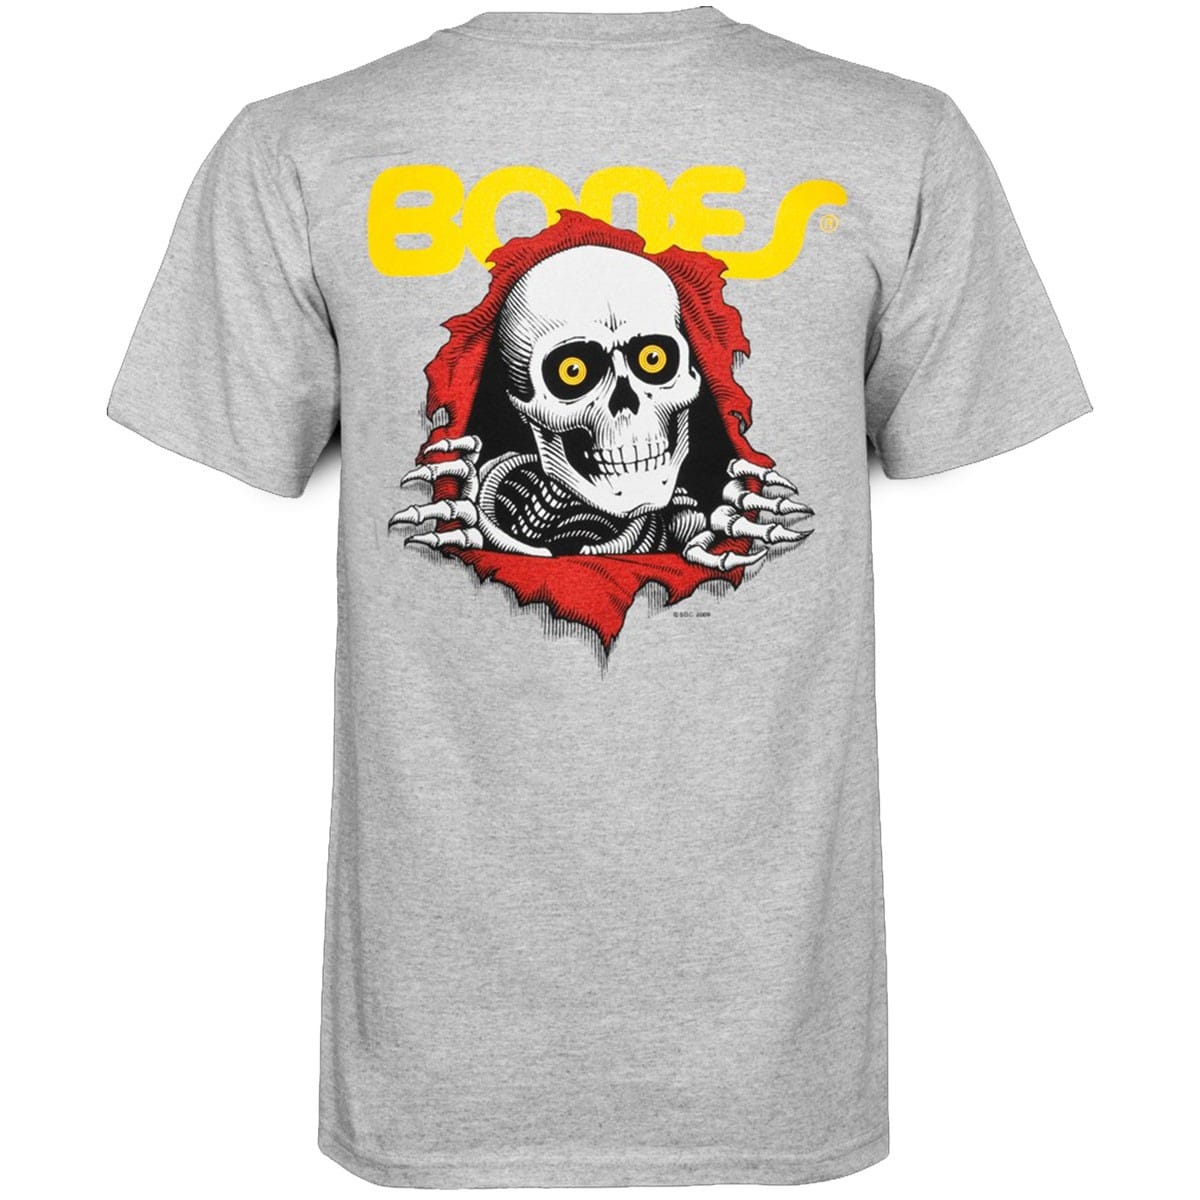 T-shirt Bones / Powell Peralta Ripper gris